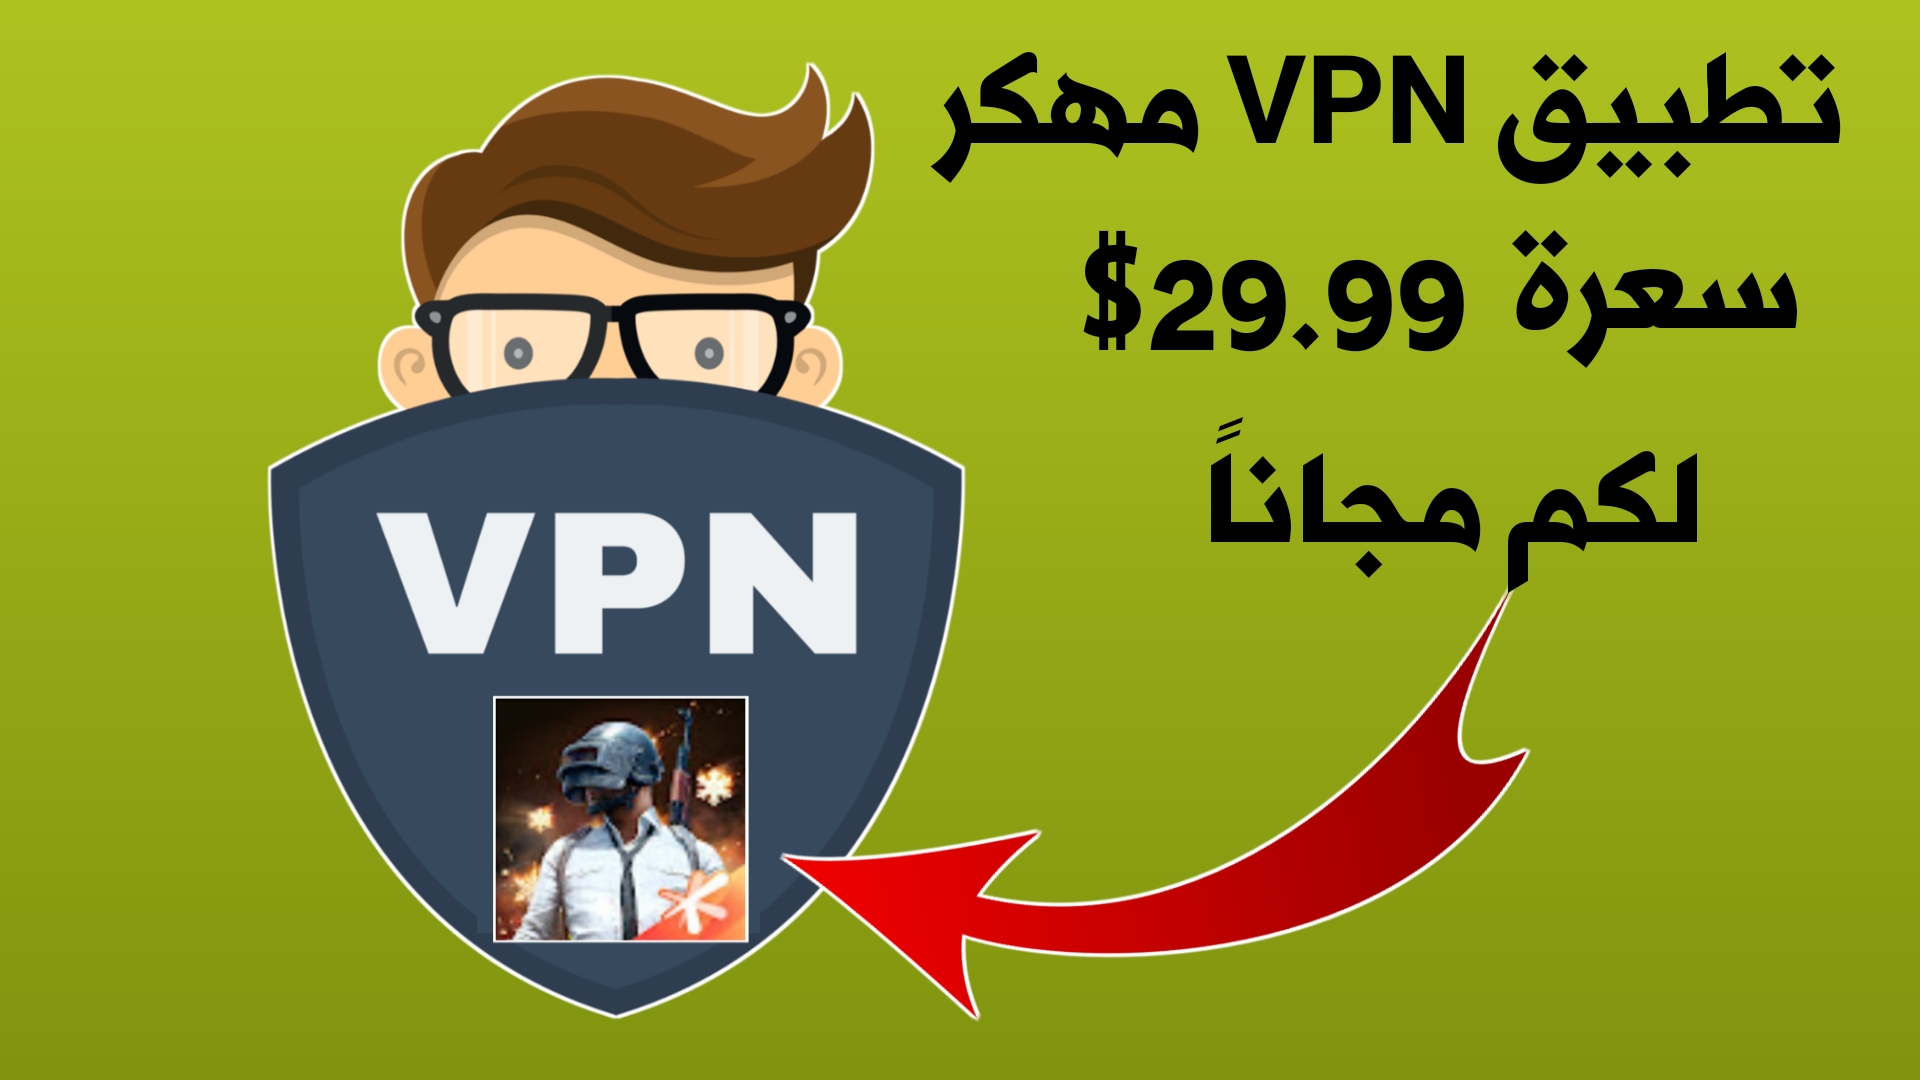 تطبيق VPN مهكر للأندرويد سعرة 29.99 دولار لكم مجاناً !!! لتسريع الأنترنت وخفض بينغ Pubge